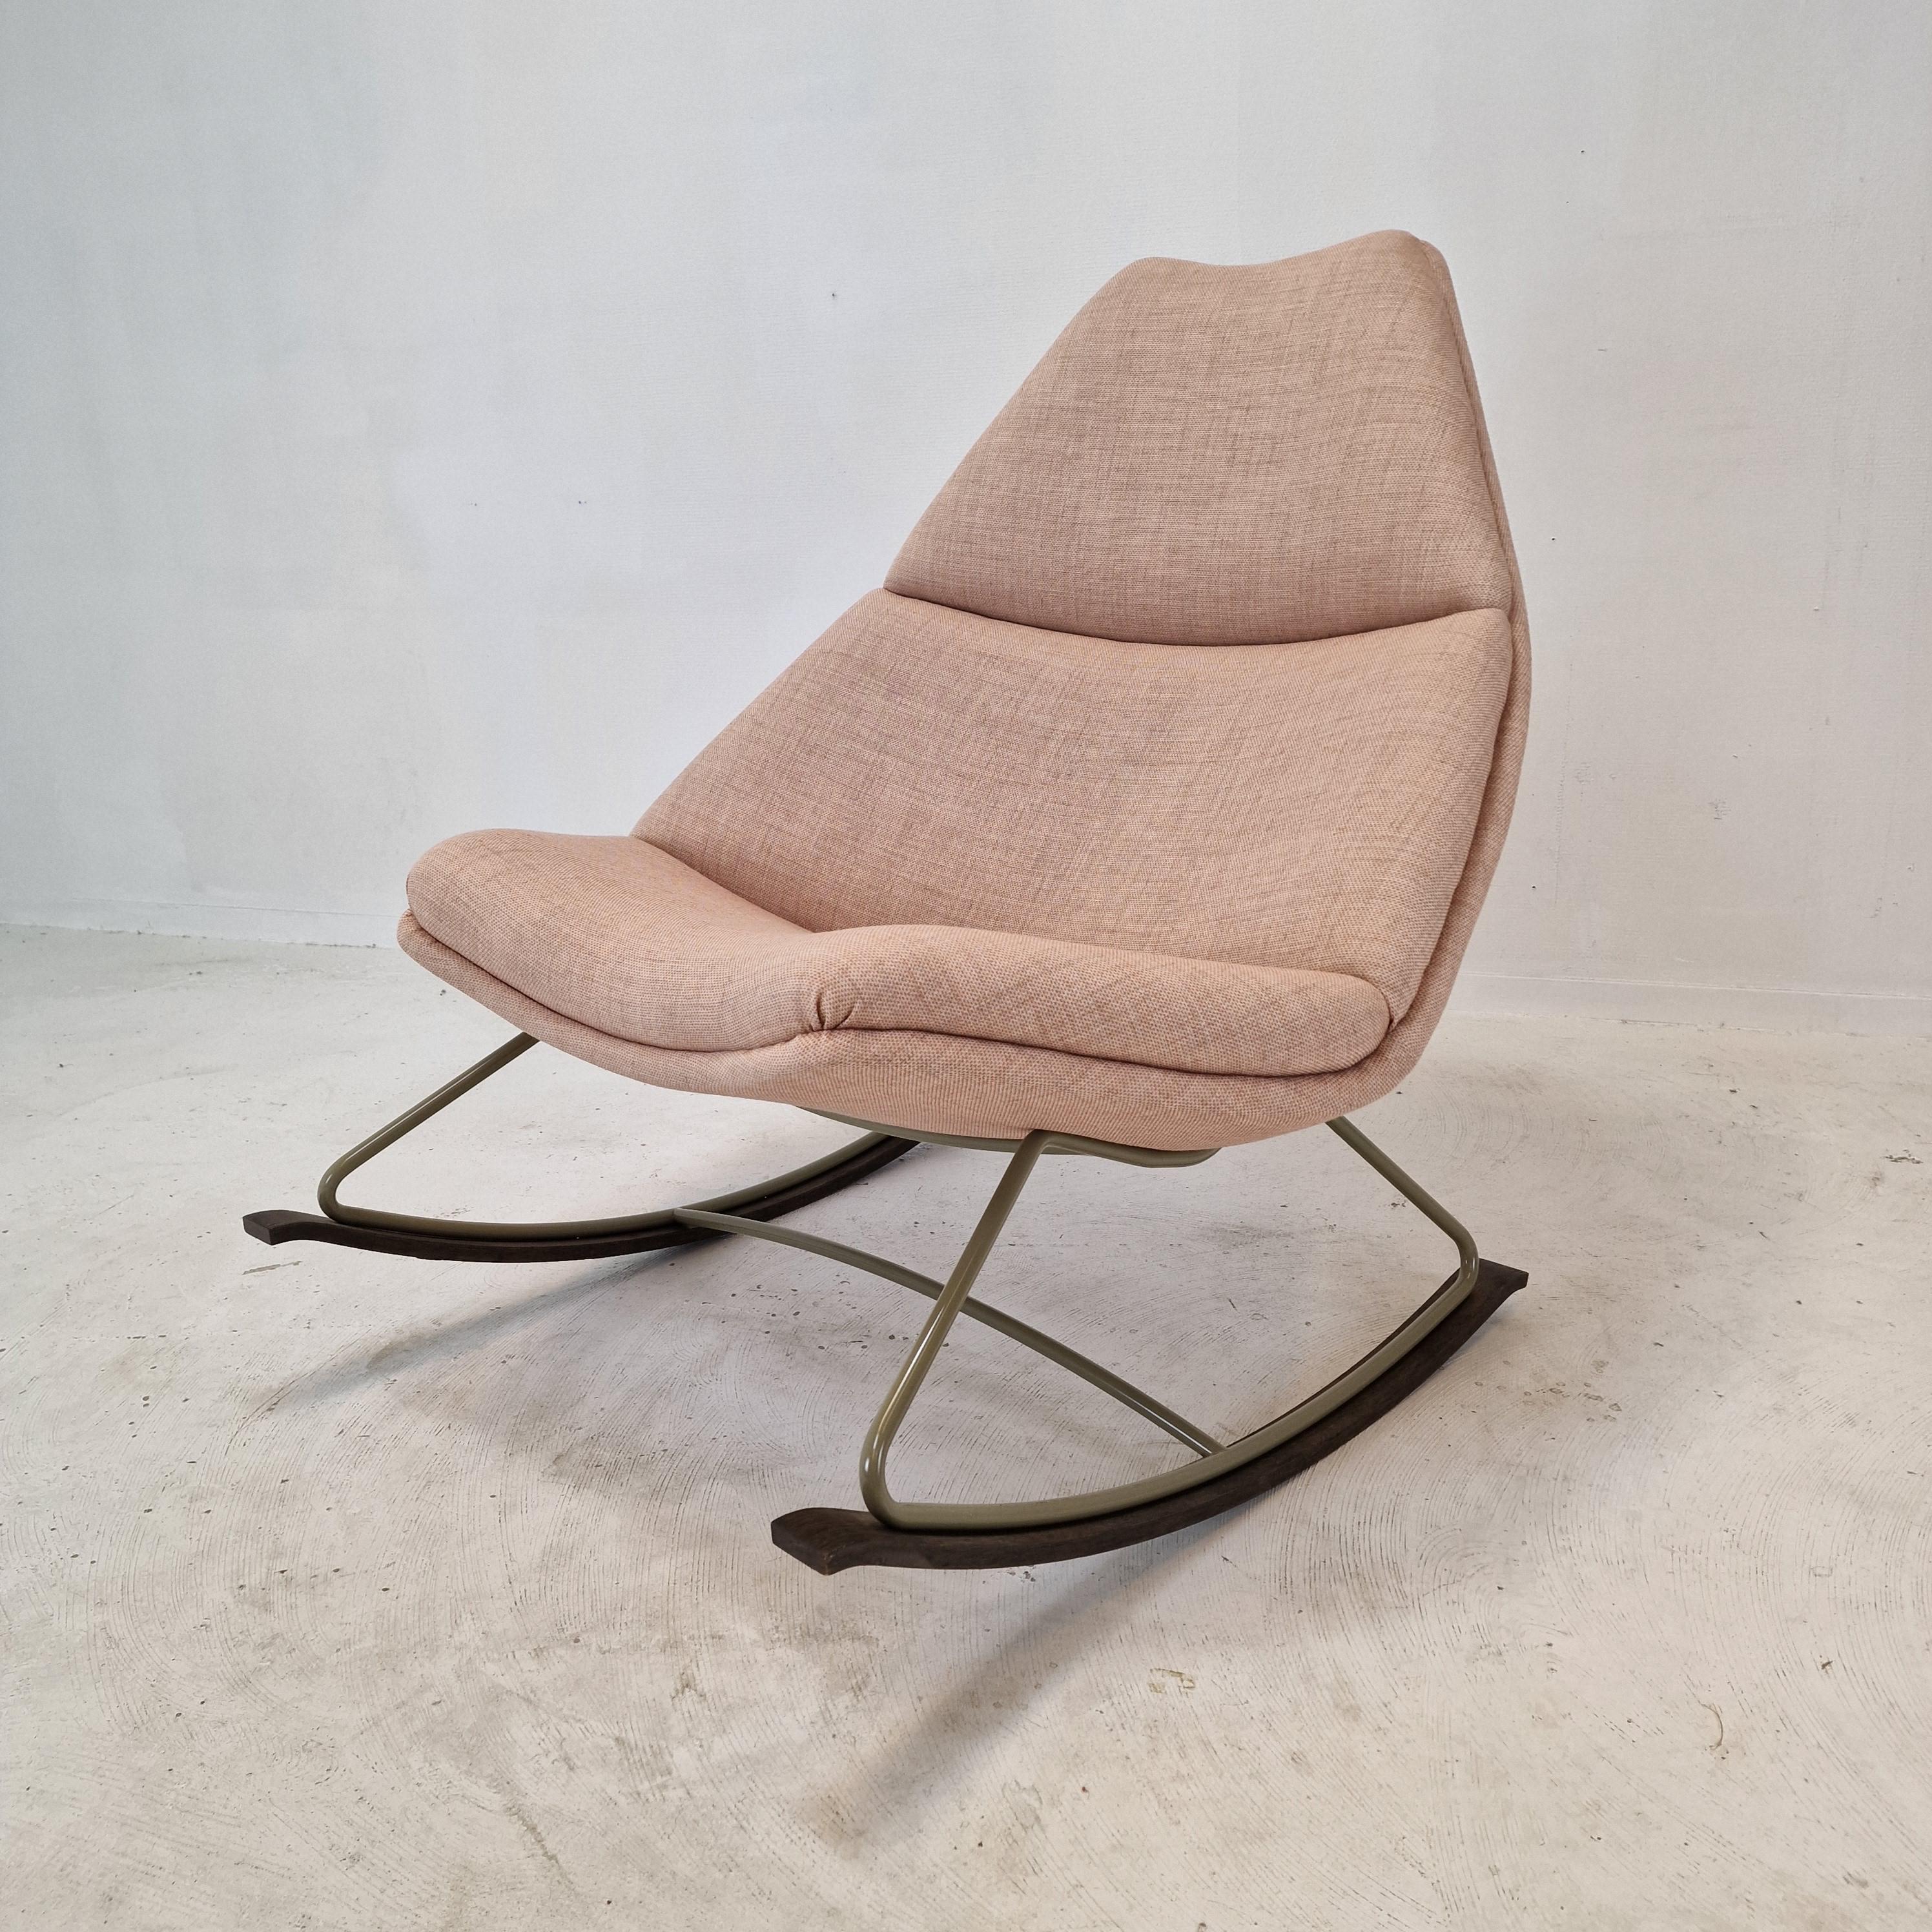 Rocking Chair très confortable, fabriqué par Artifort et conçu par Geoffrey Harcourt dans les années 60. 

Cette chaise particulière est fabriquée en 2022.

Le tissu et la mousse sont en parfait état.
Elle a été retapissée avec du tissu Kvadrat de